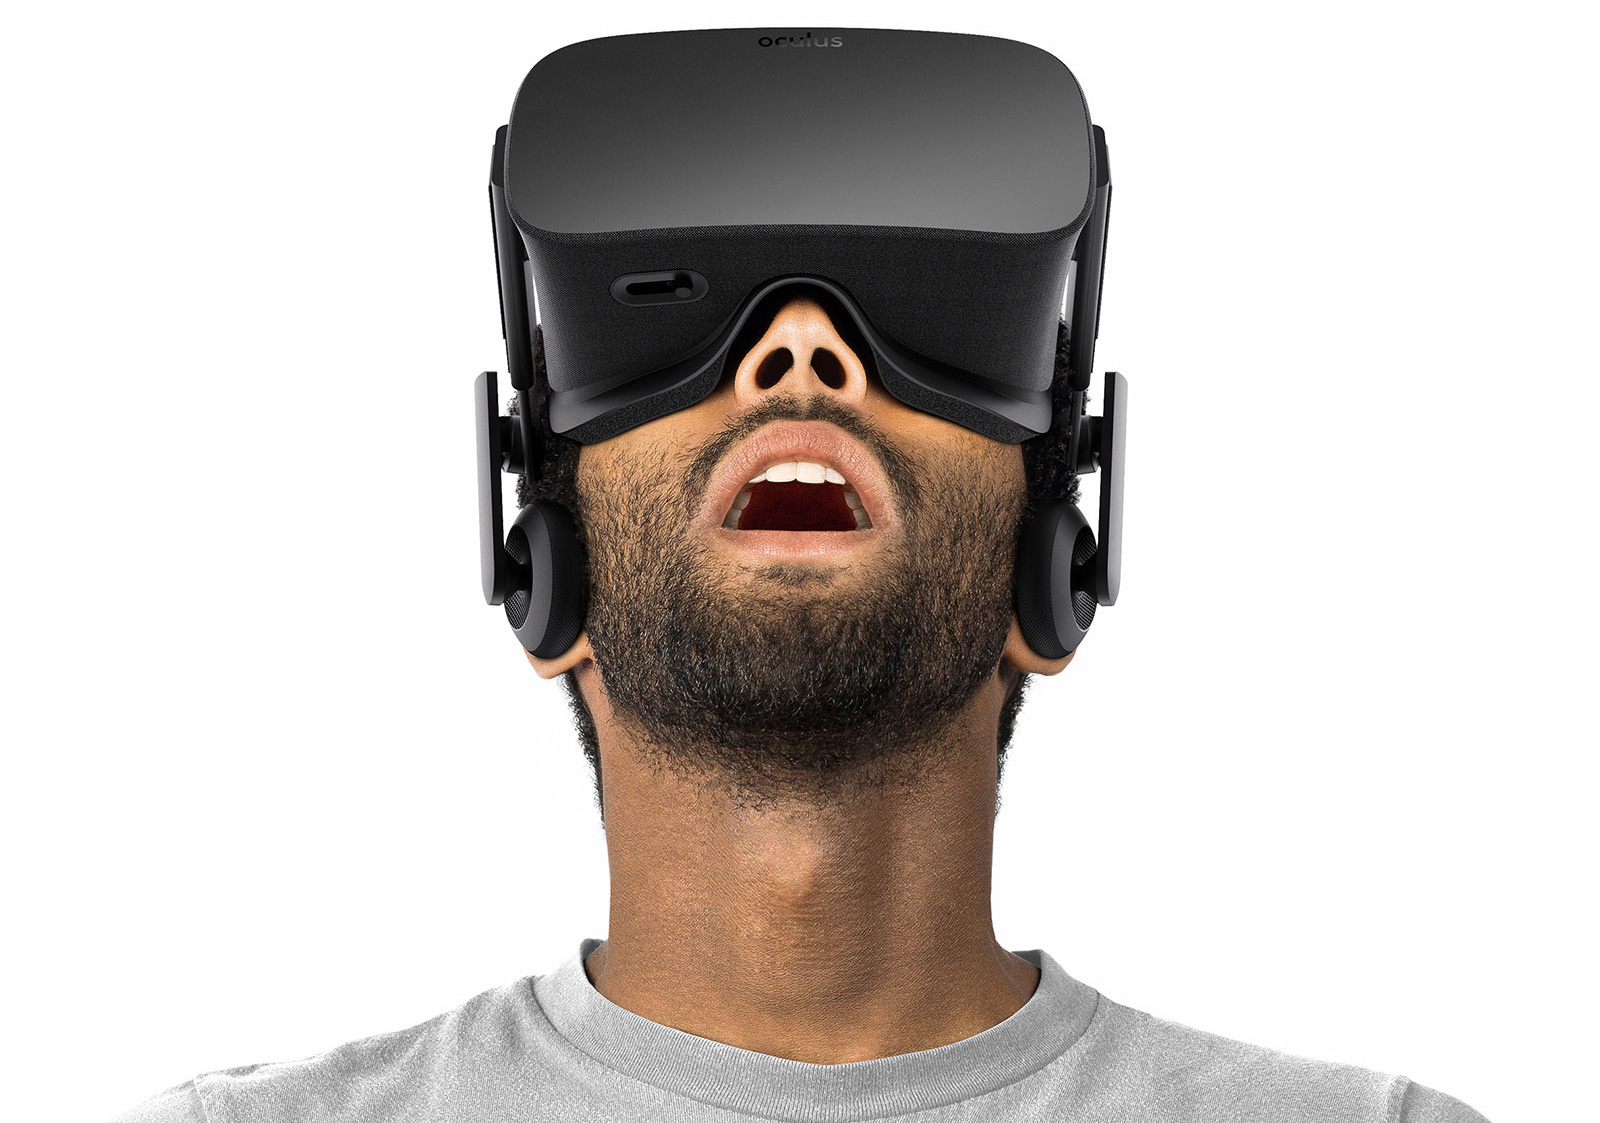 Immagine pubblicata in relazione al seguente contenuto: ASUS collabora con Oculus per evolvere la realt virtuale in ambito gaming | Nome immagine: news23122_ASUS-Oculus-Rift_1.jpg